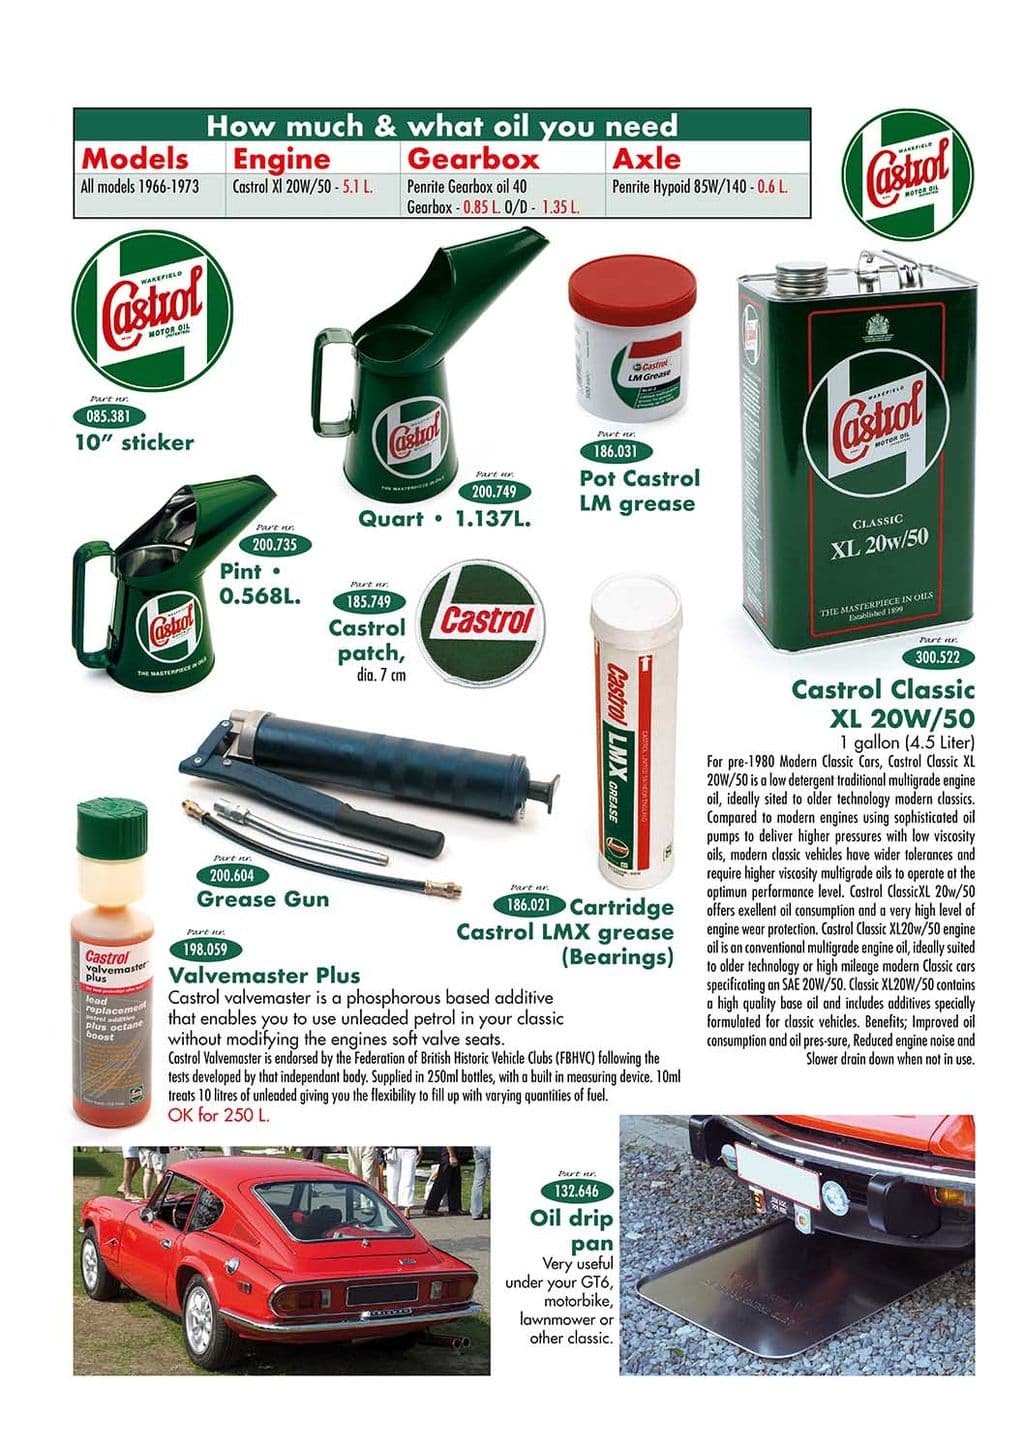 Oil cans & drip pan - Wyposażenie dodatkowe - Konserwacja & przechowywanie - Jaguar XJ6-12 / Daimler Sovereign, D6 1968-'92 - Oil cans & drip pan - 1